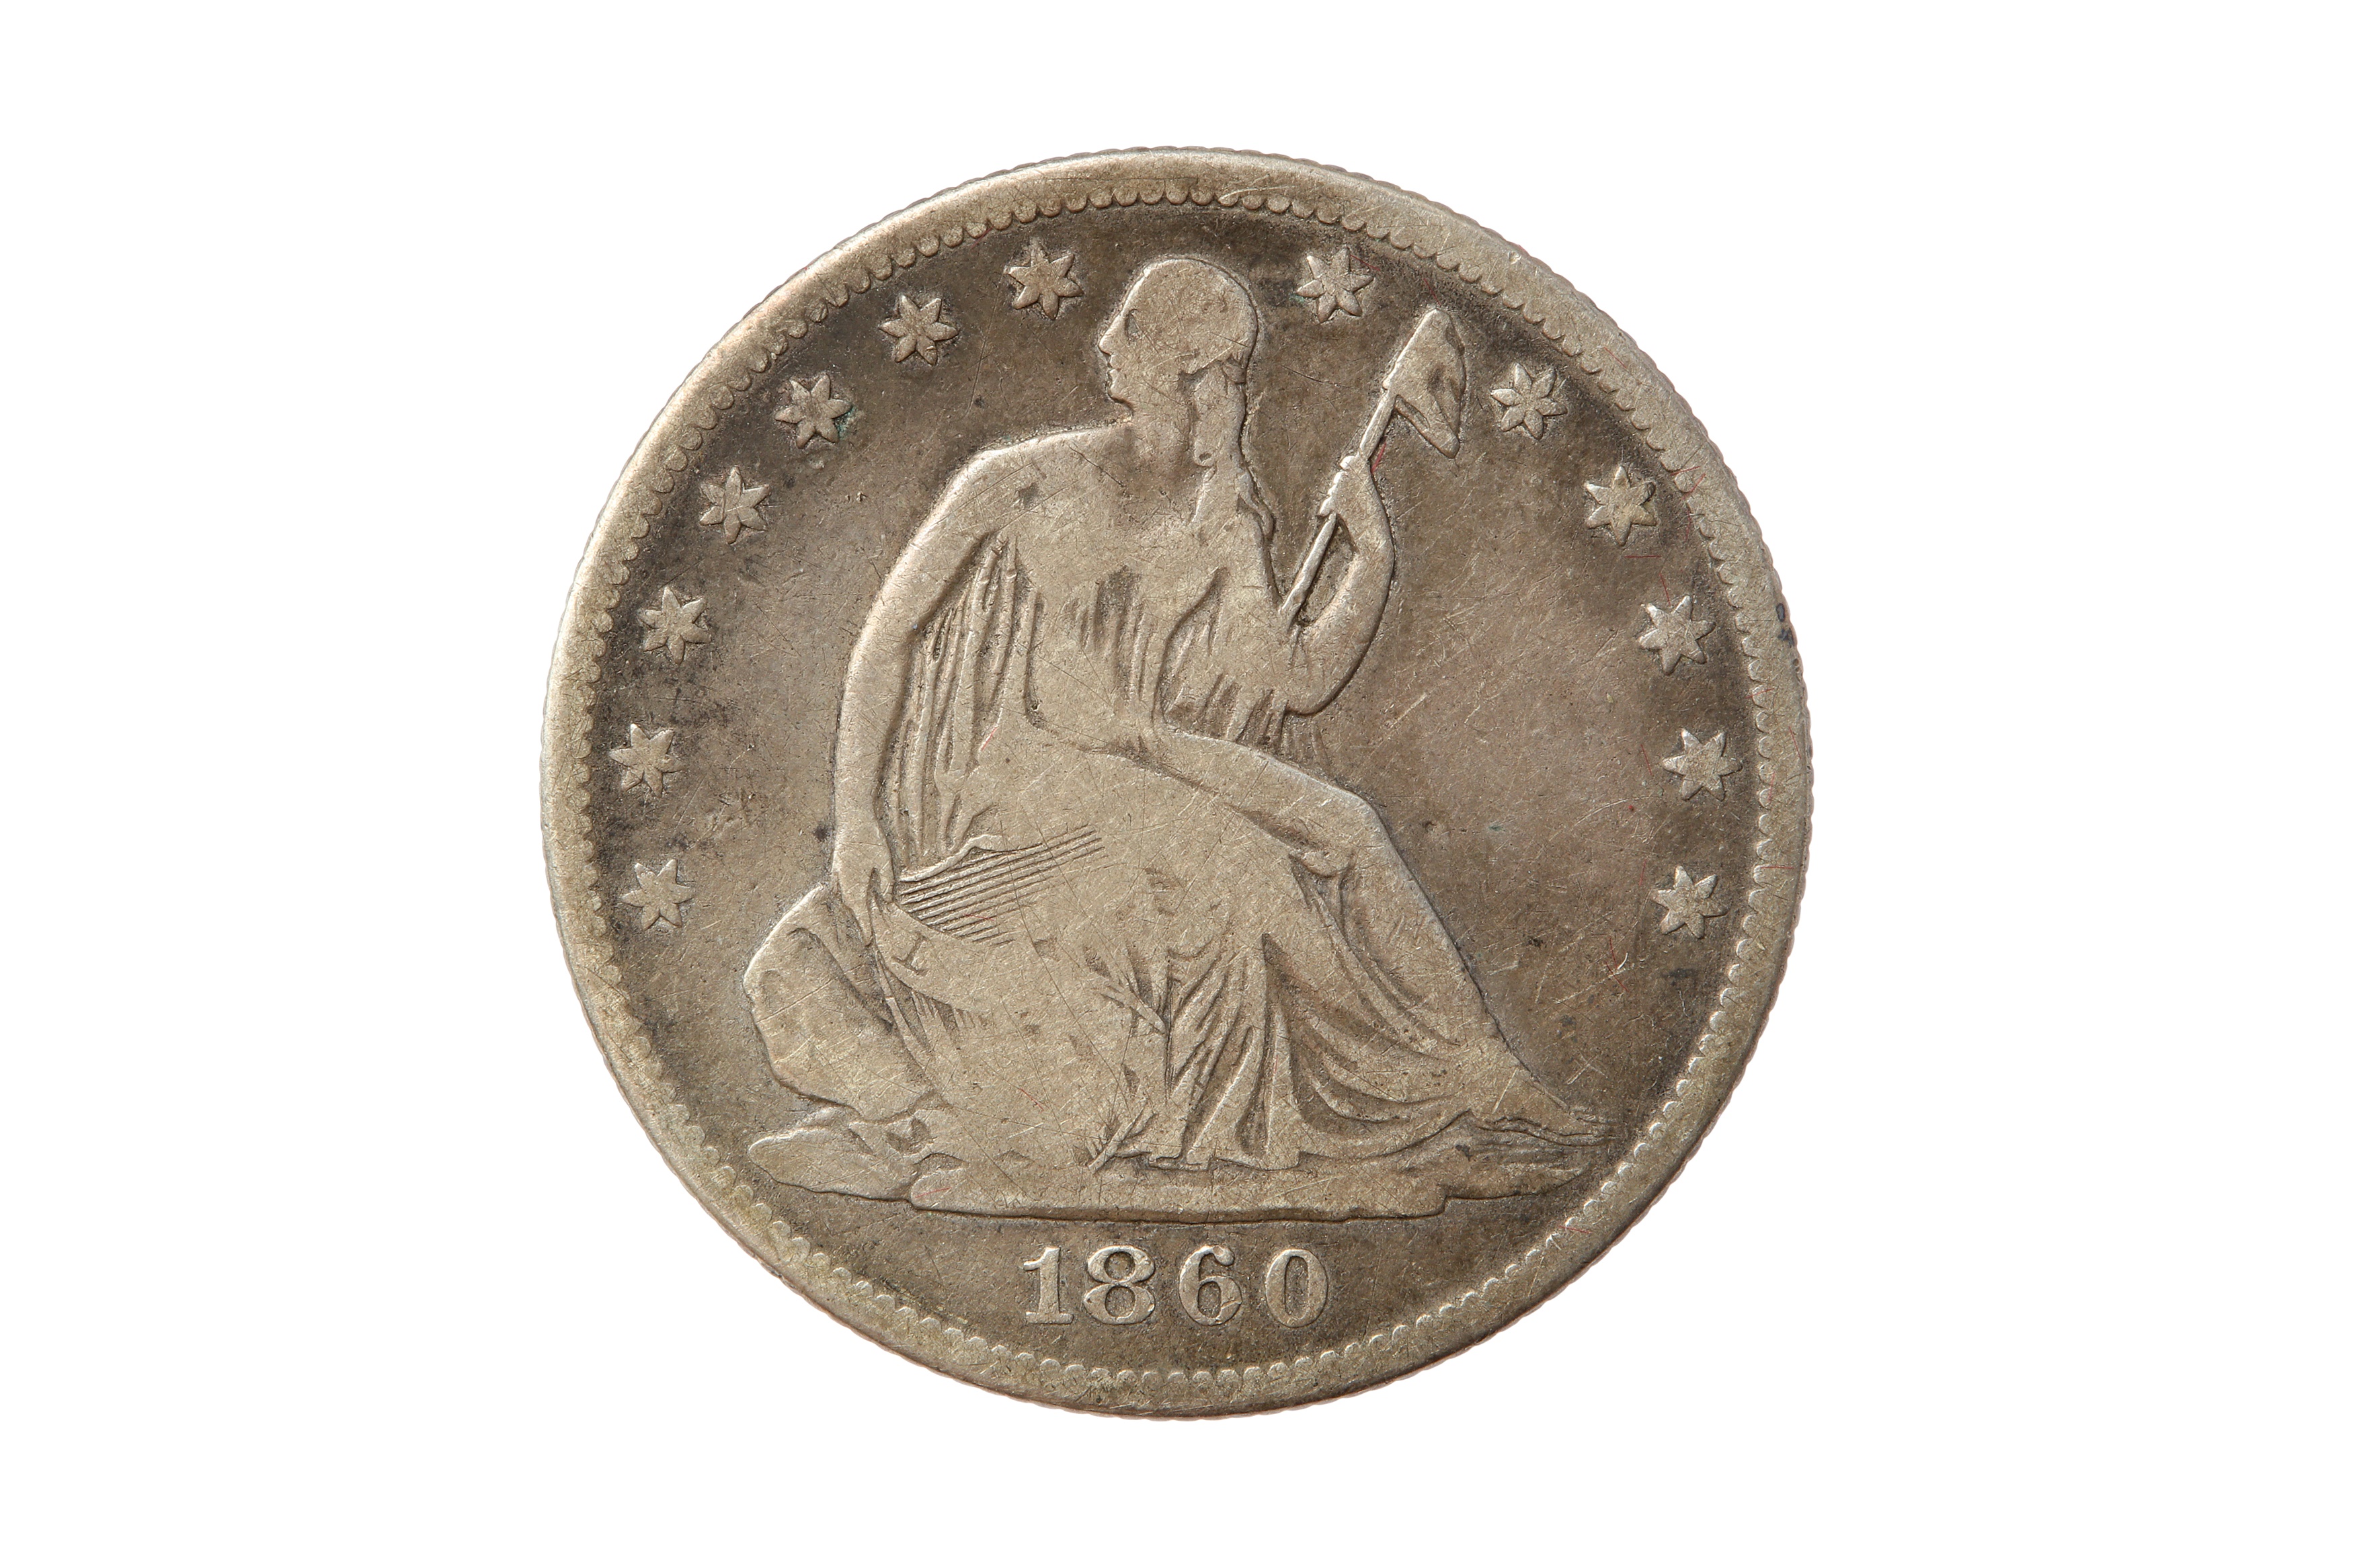 USA, 1860-O 50 CENTS/HALF DOLLAR.